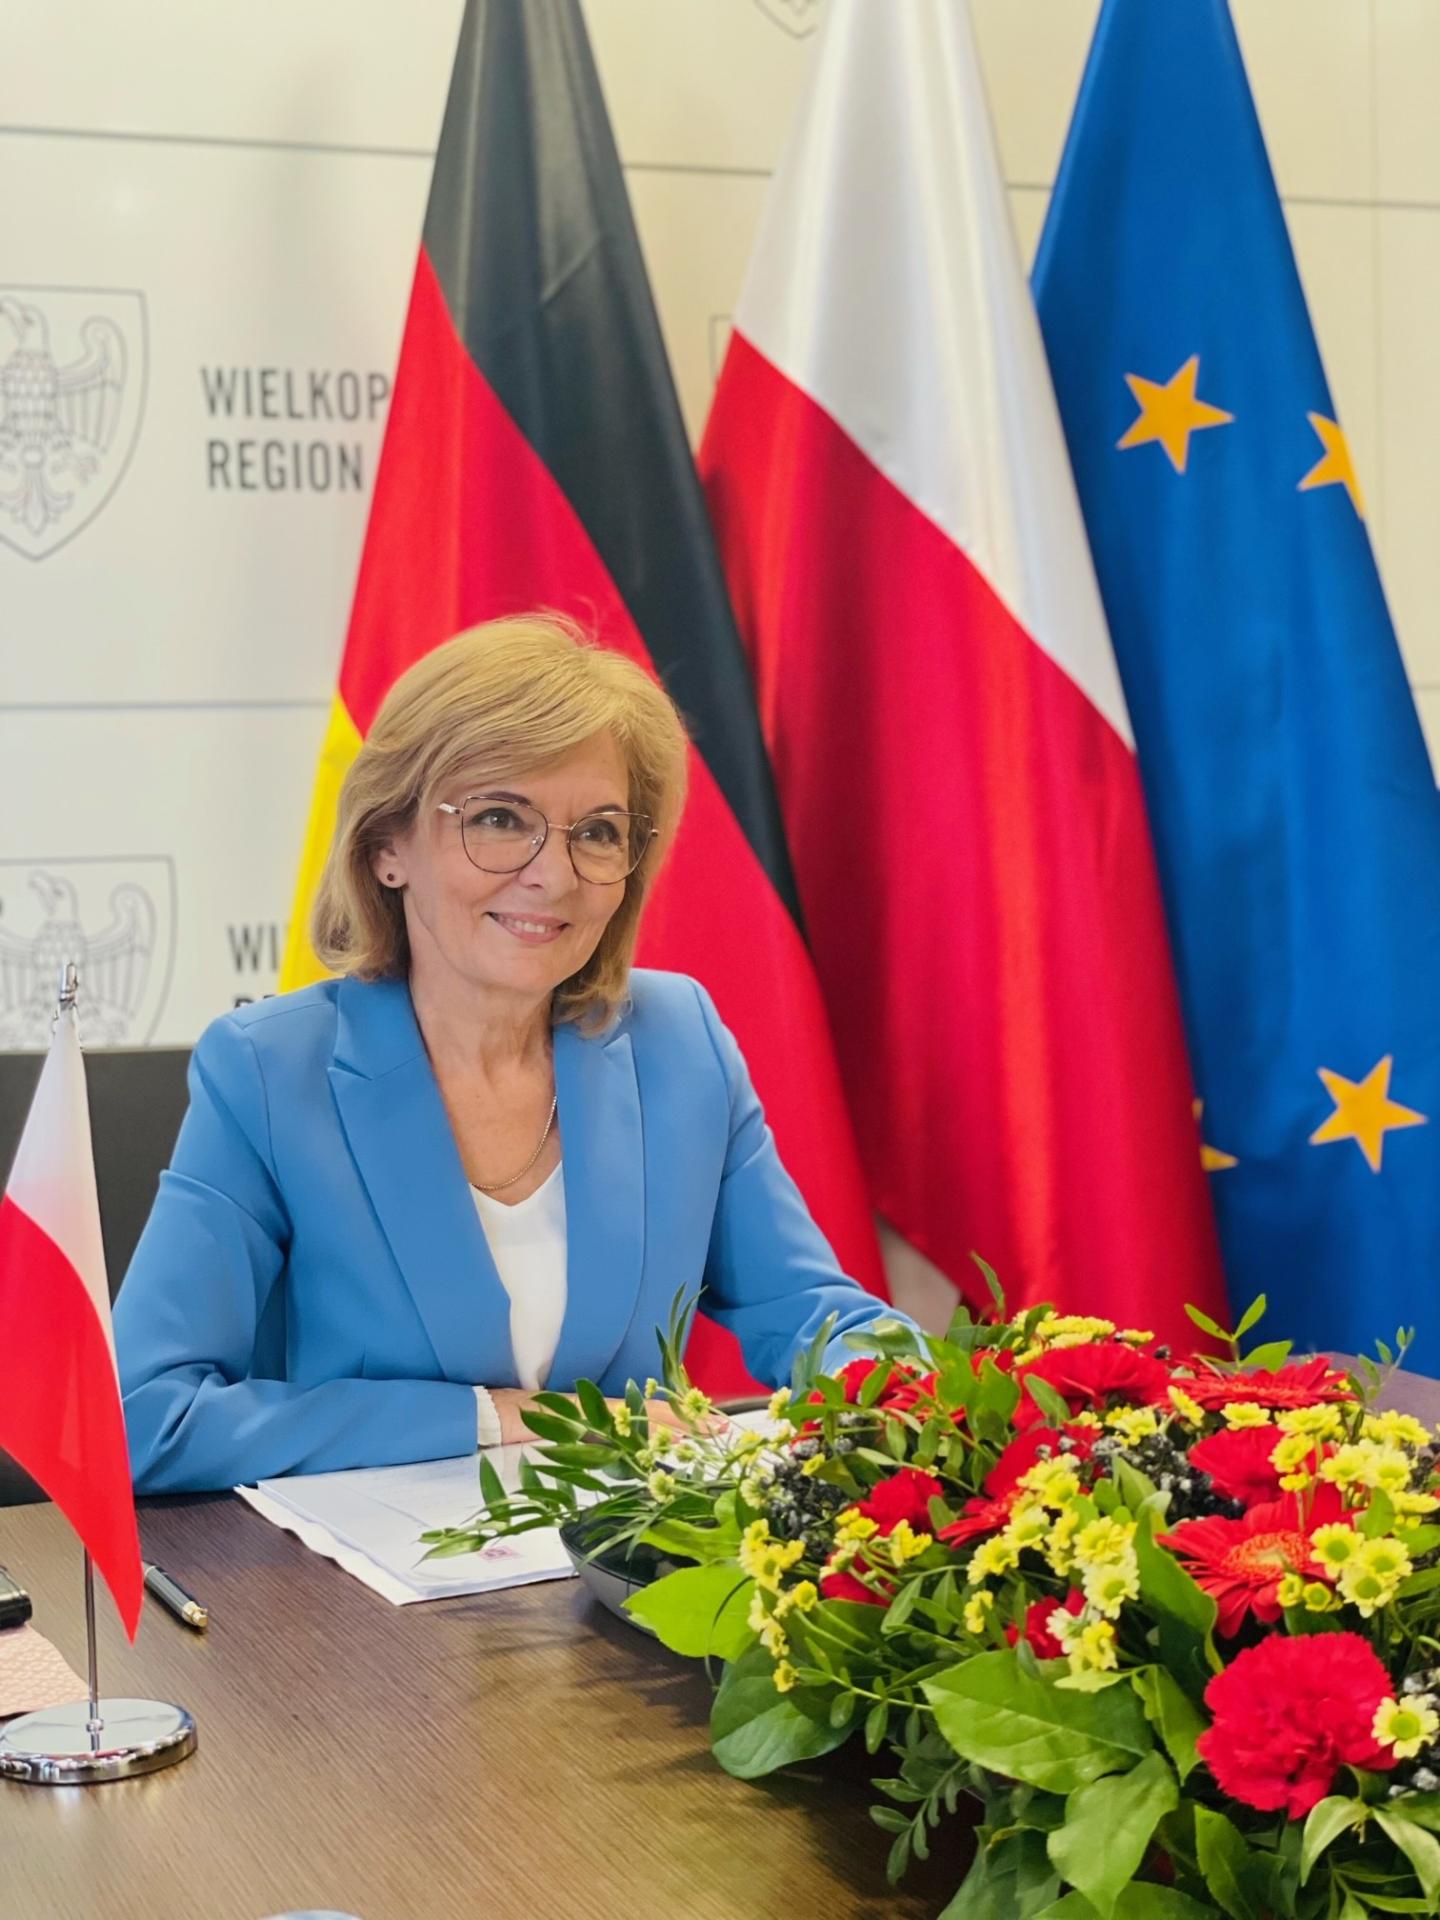 Rozmowa przewodniczących z Wielkopolski i Hesji - zobacz więcej